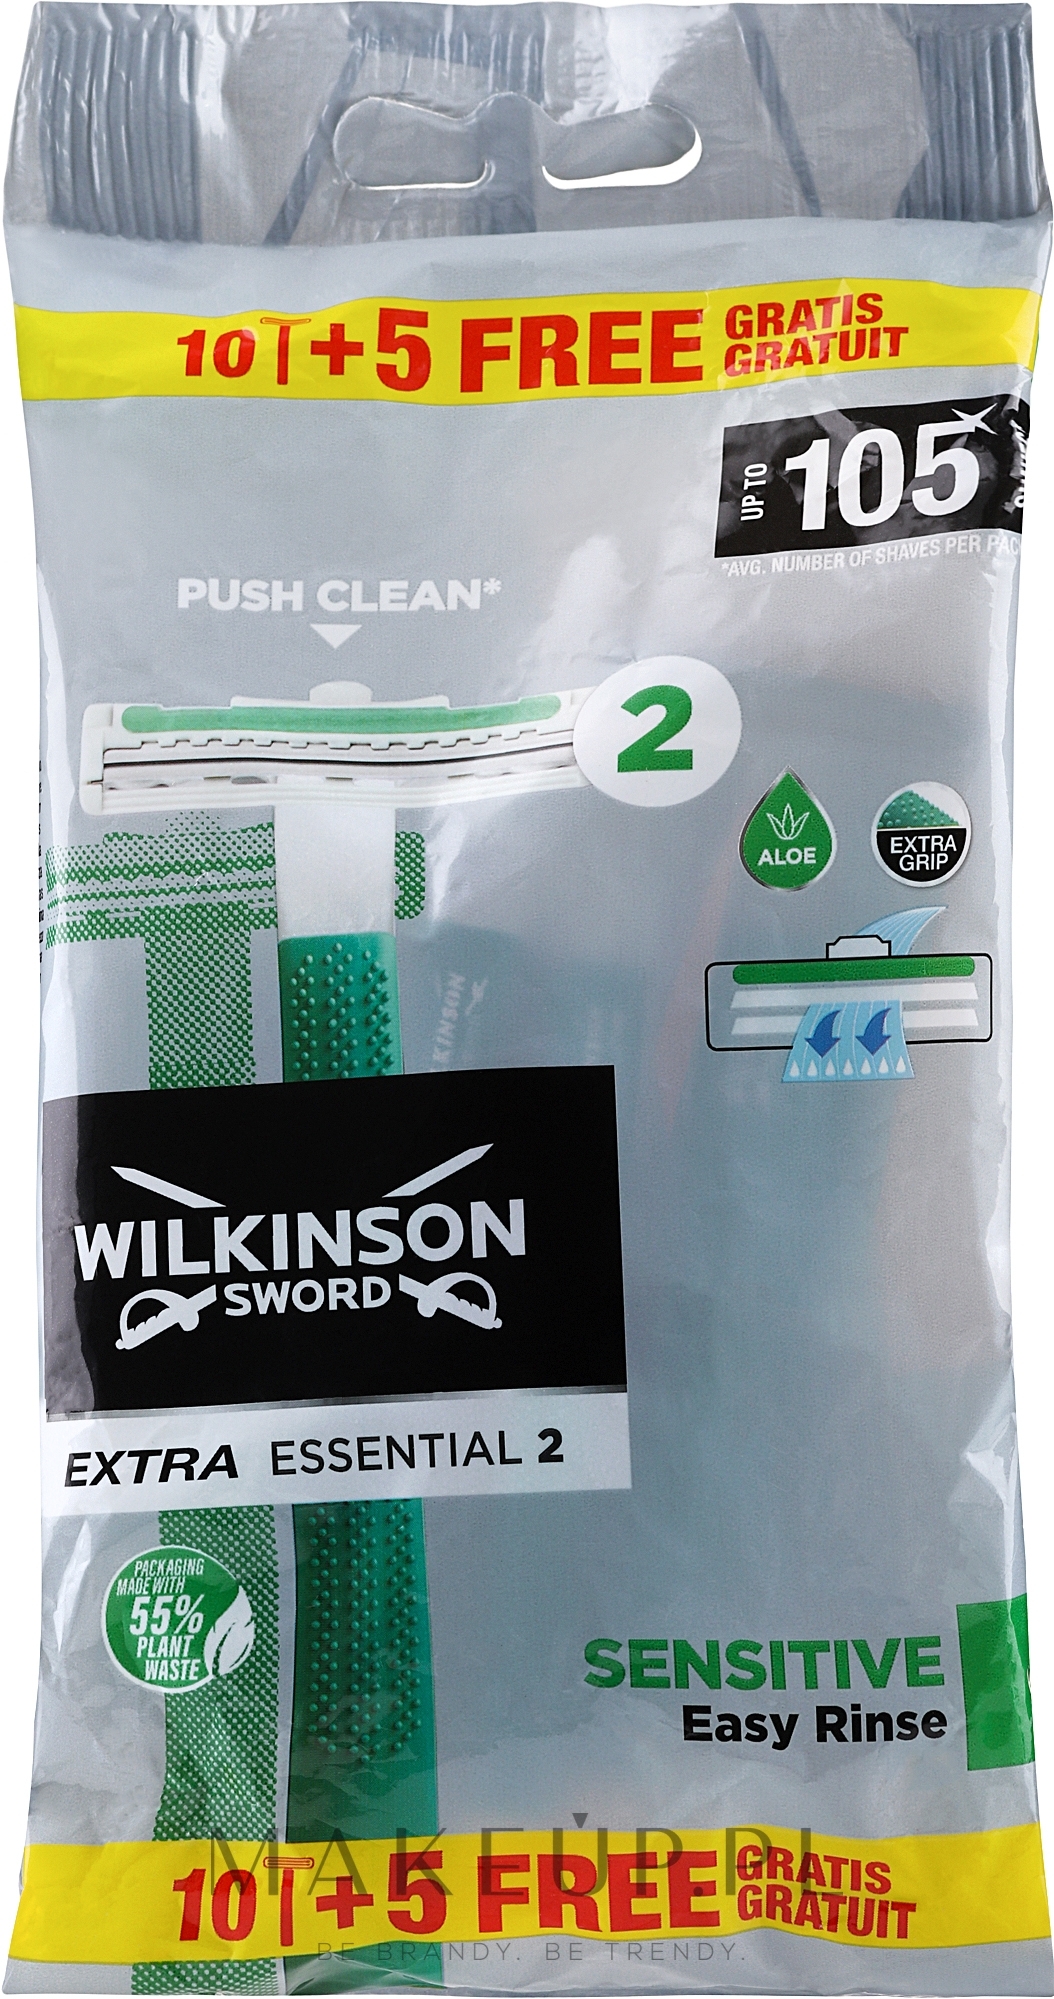 Jednorazowe maszynki do golenia, 15 szt. - Wilkinson Sword Extra Essential 2 Sensitive — Zdjęcie 15 szt.